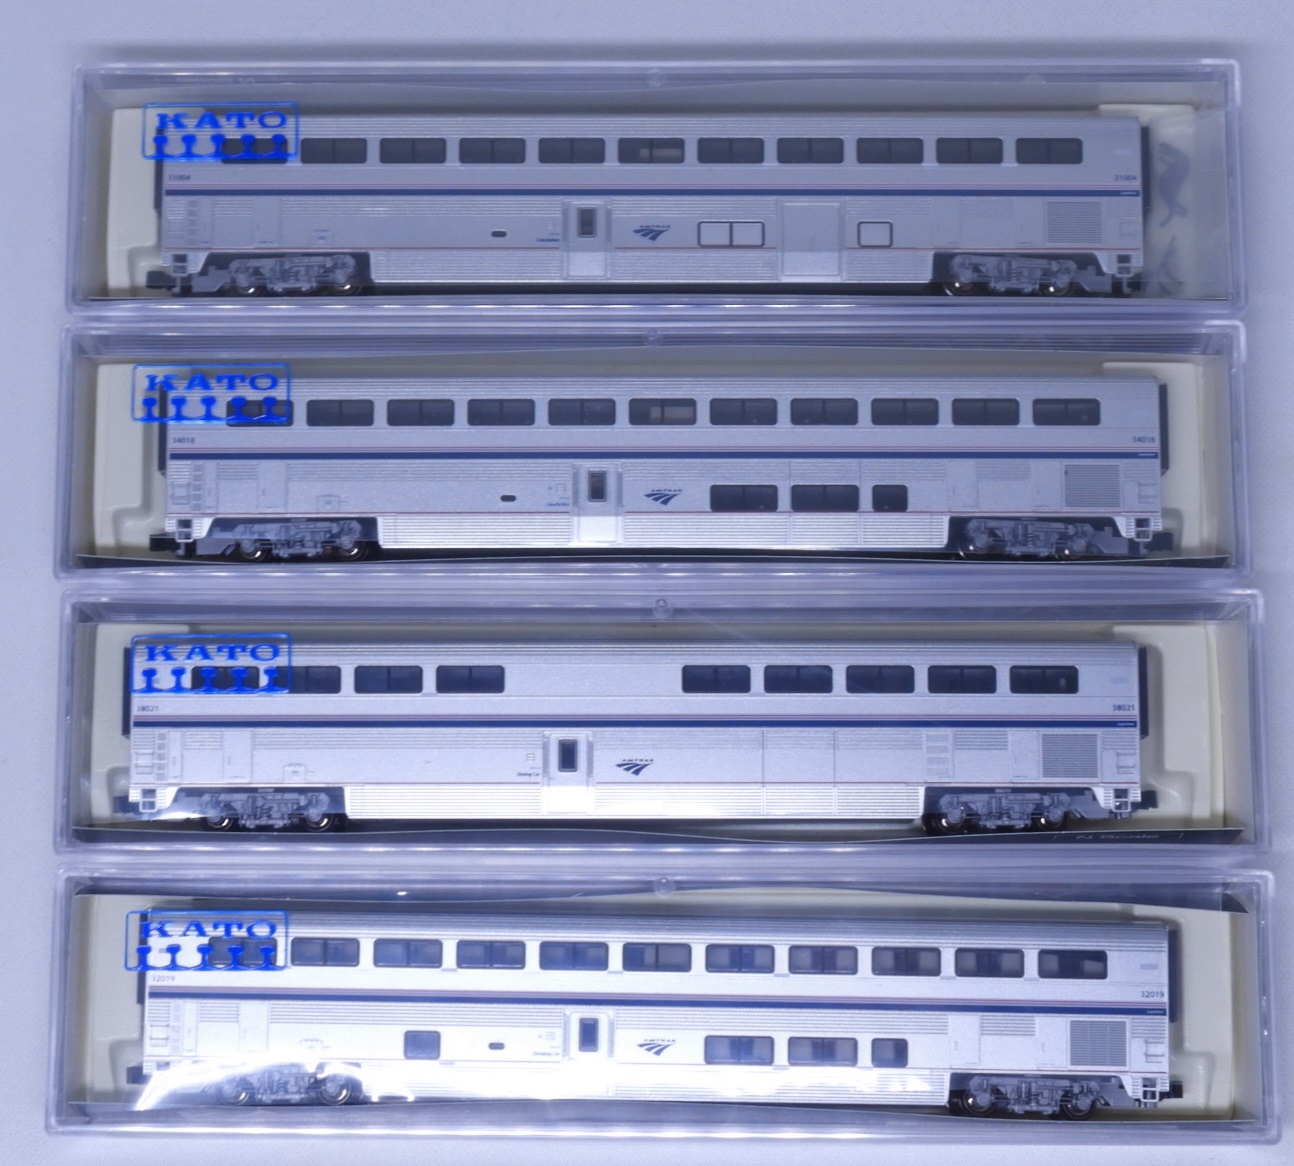 カトー 106-3515 スーパーライナーⅠフェーズⅣb 4両セット A 鉄道模型